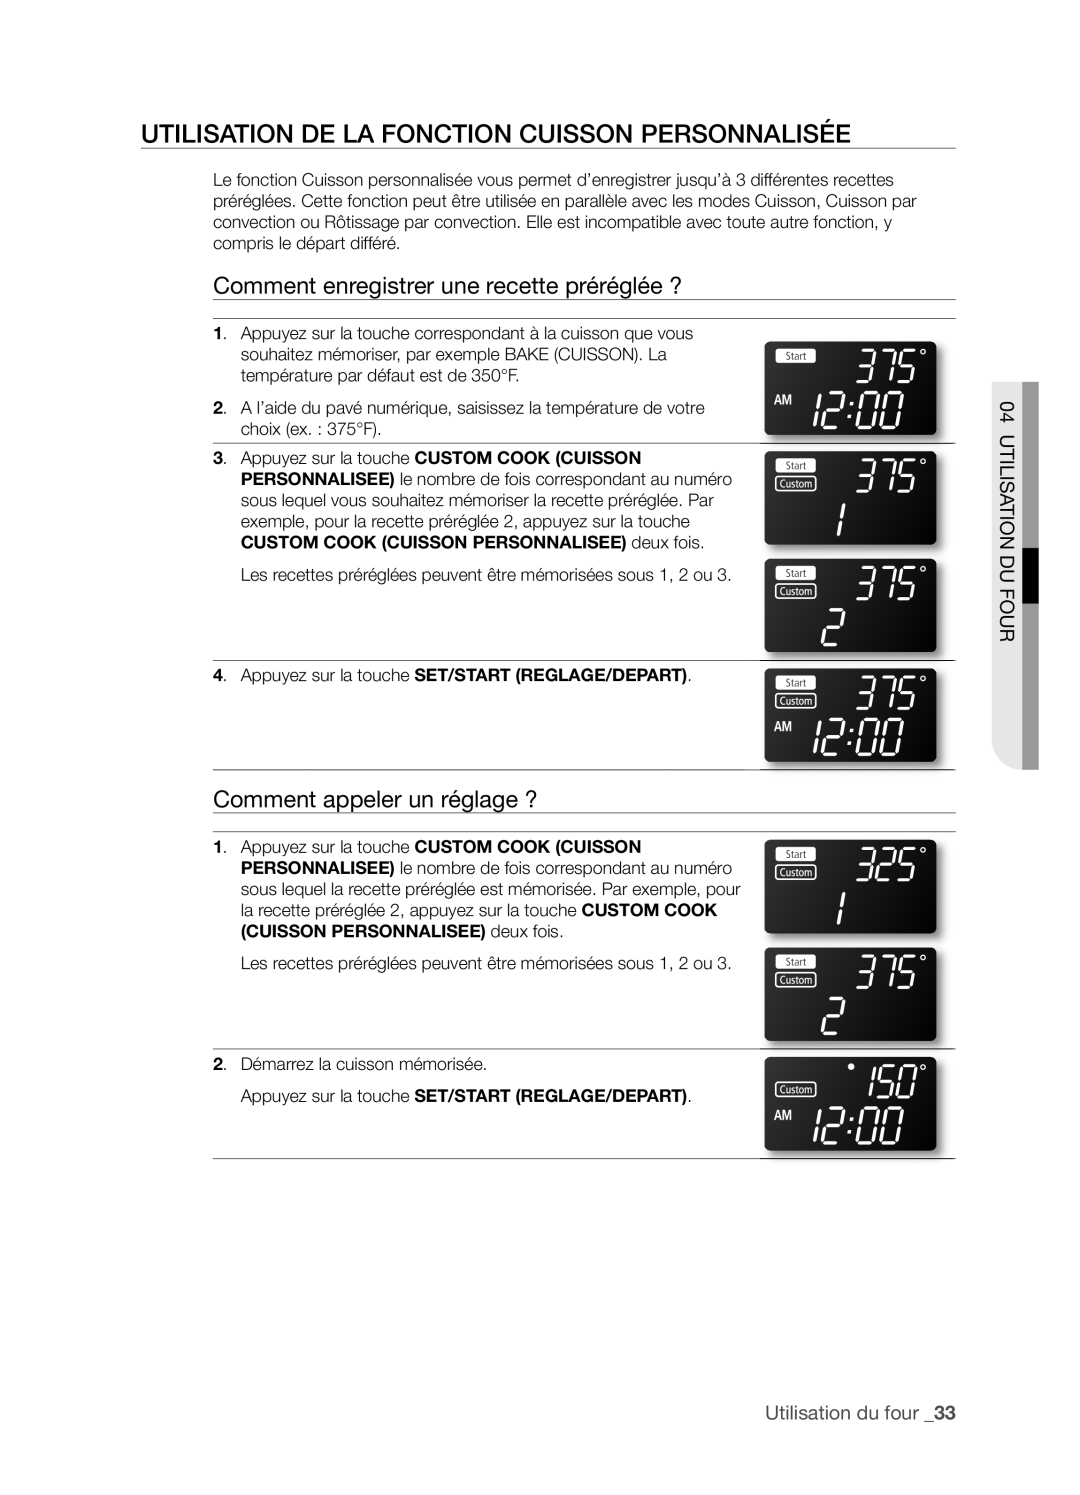 Samsung FTQ352IWX user manual UTILISATION DE LA FONCTION CUISSON PERSONNALISéE, Comment enregistrer une recette préréglée ? 